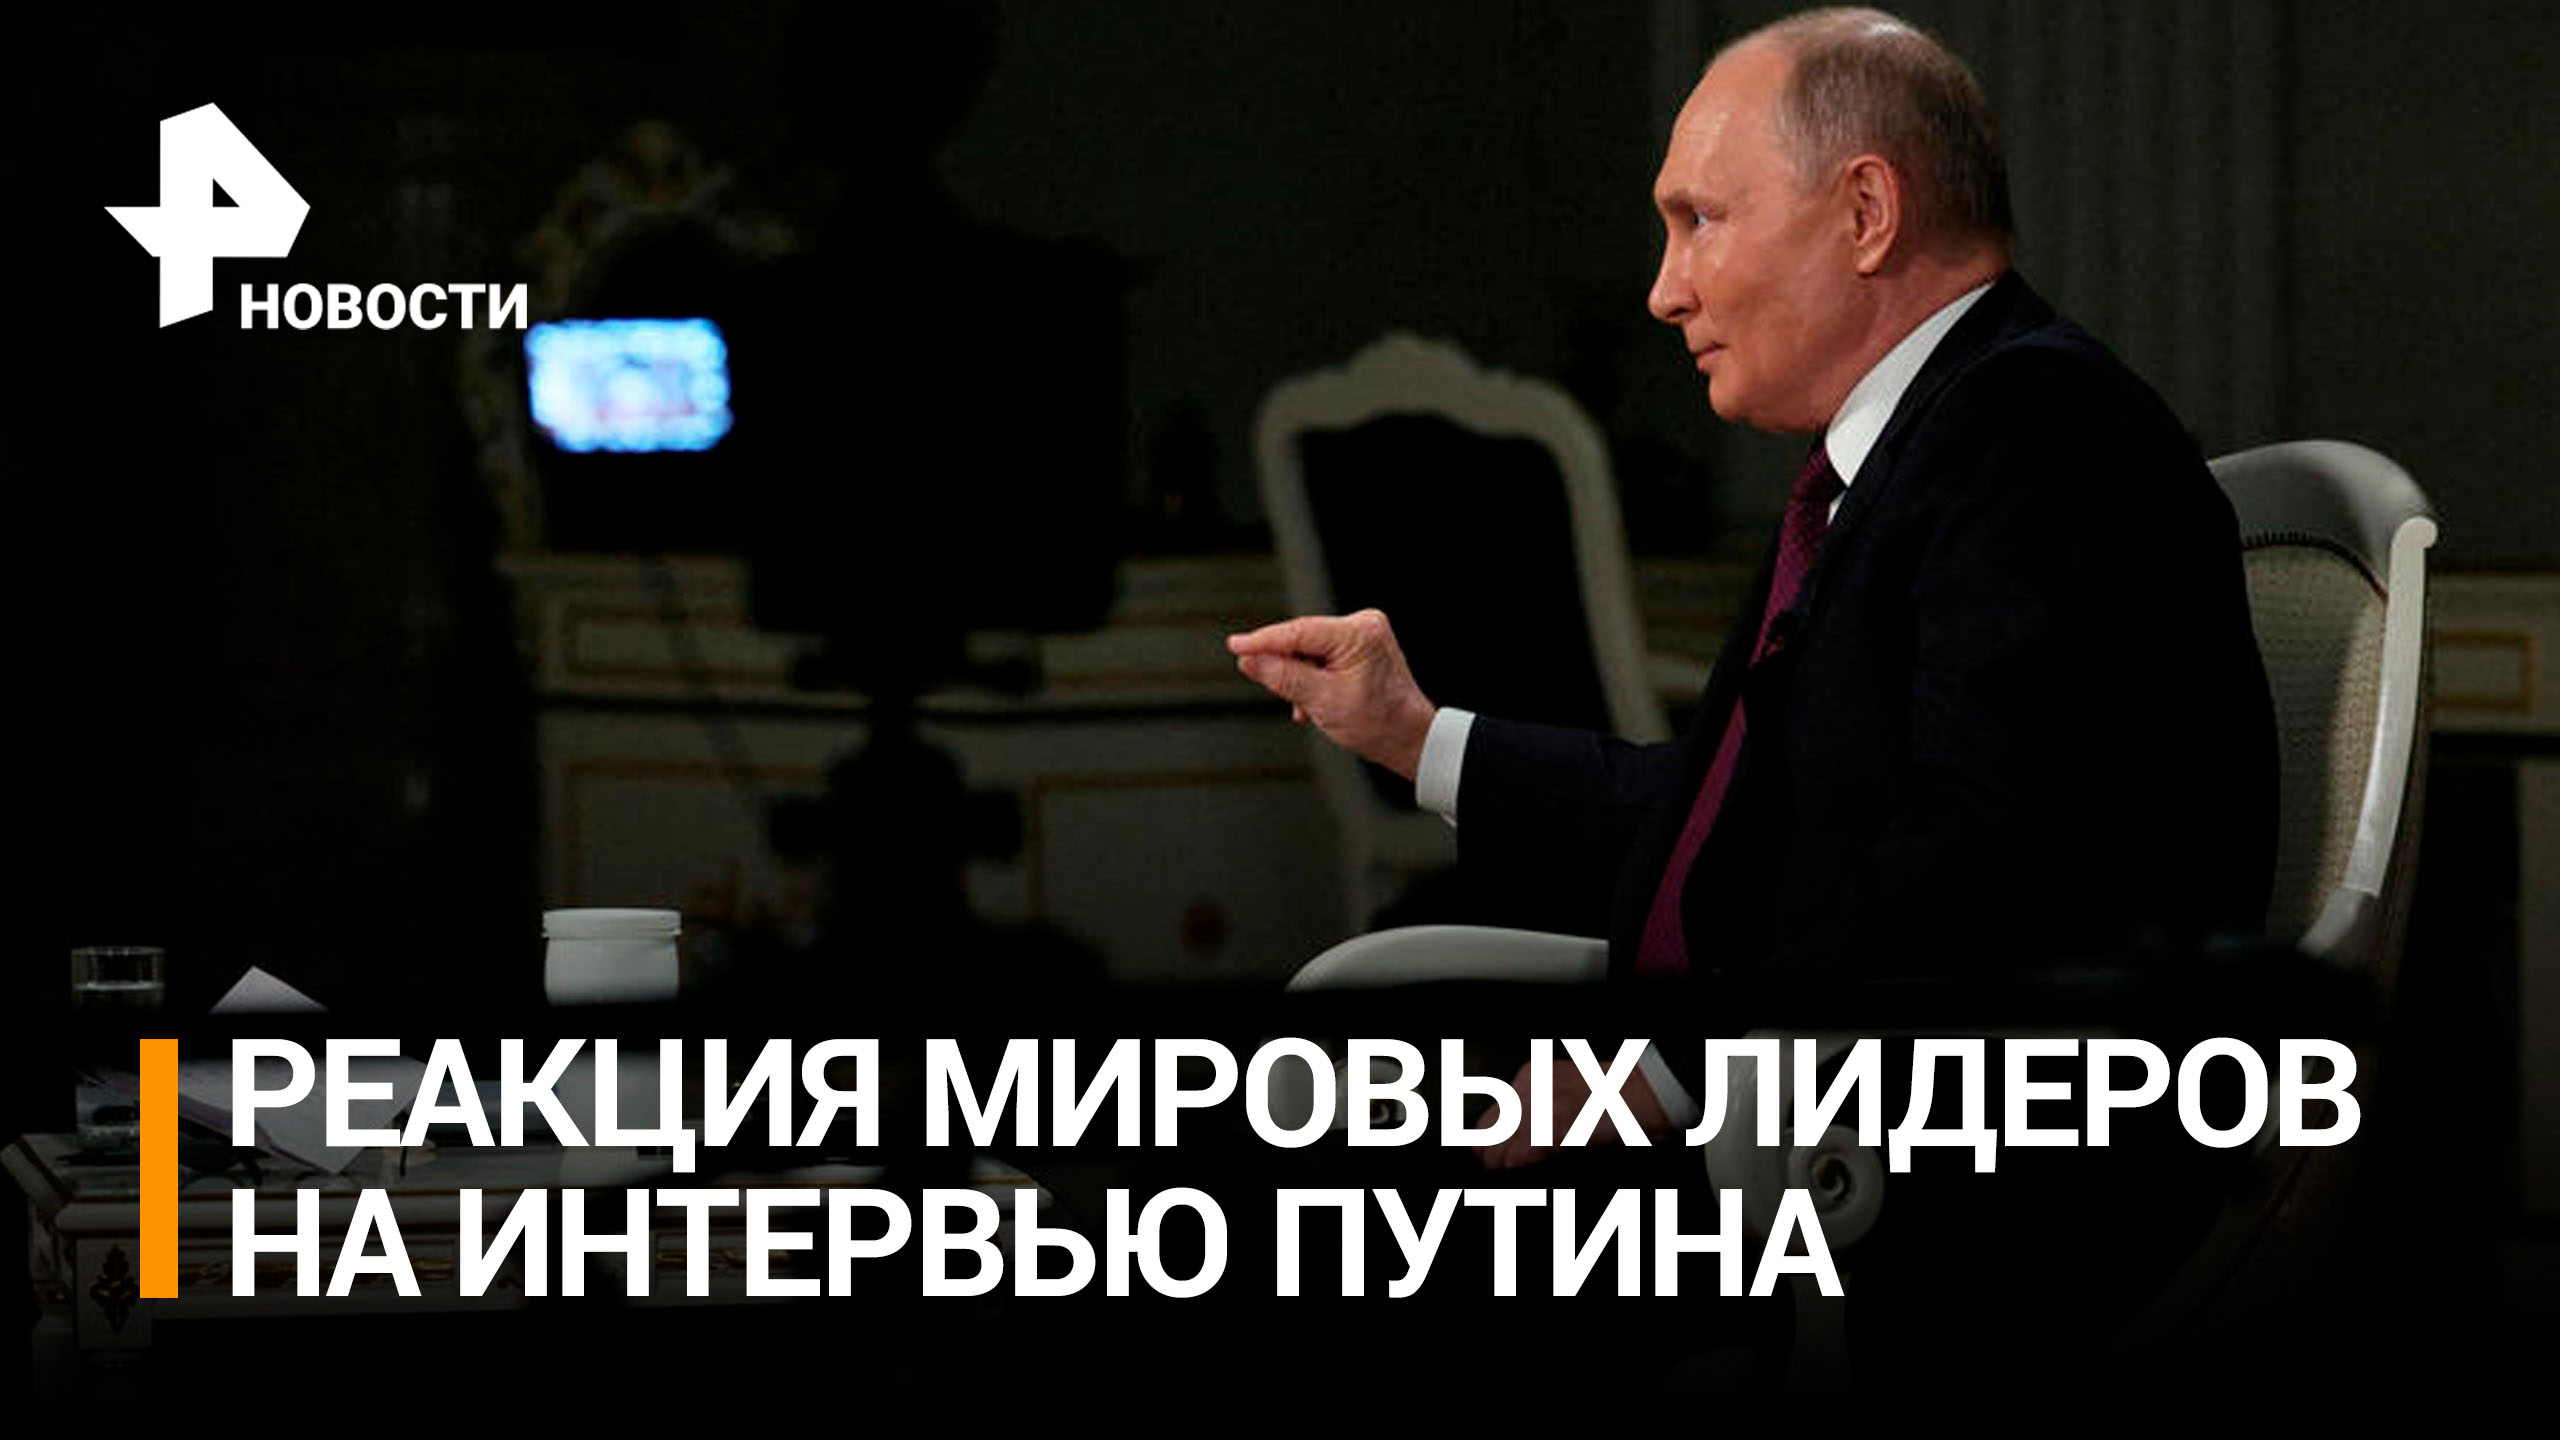 Американцы удивлены нервной реакцией лидеров Запада на интервью Путина / РЕН Новости